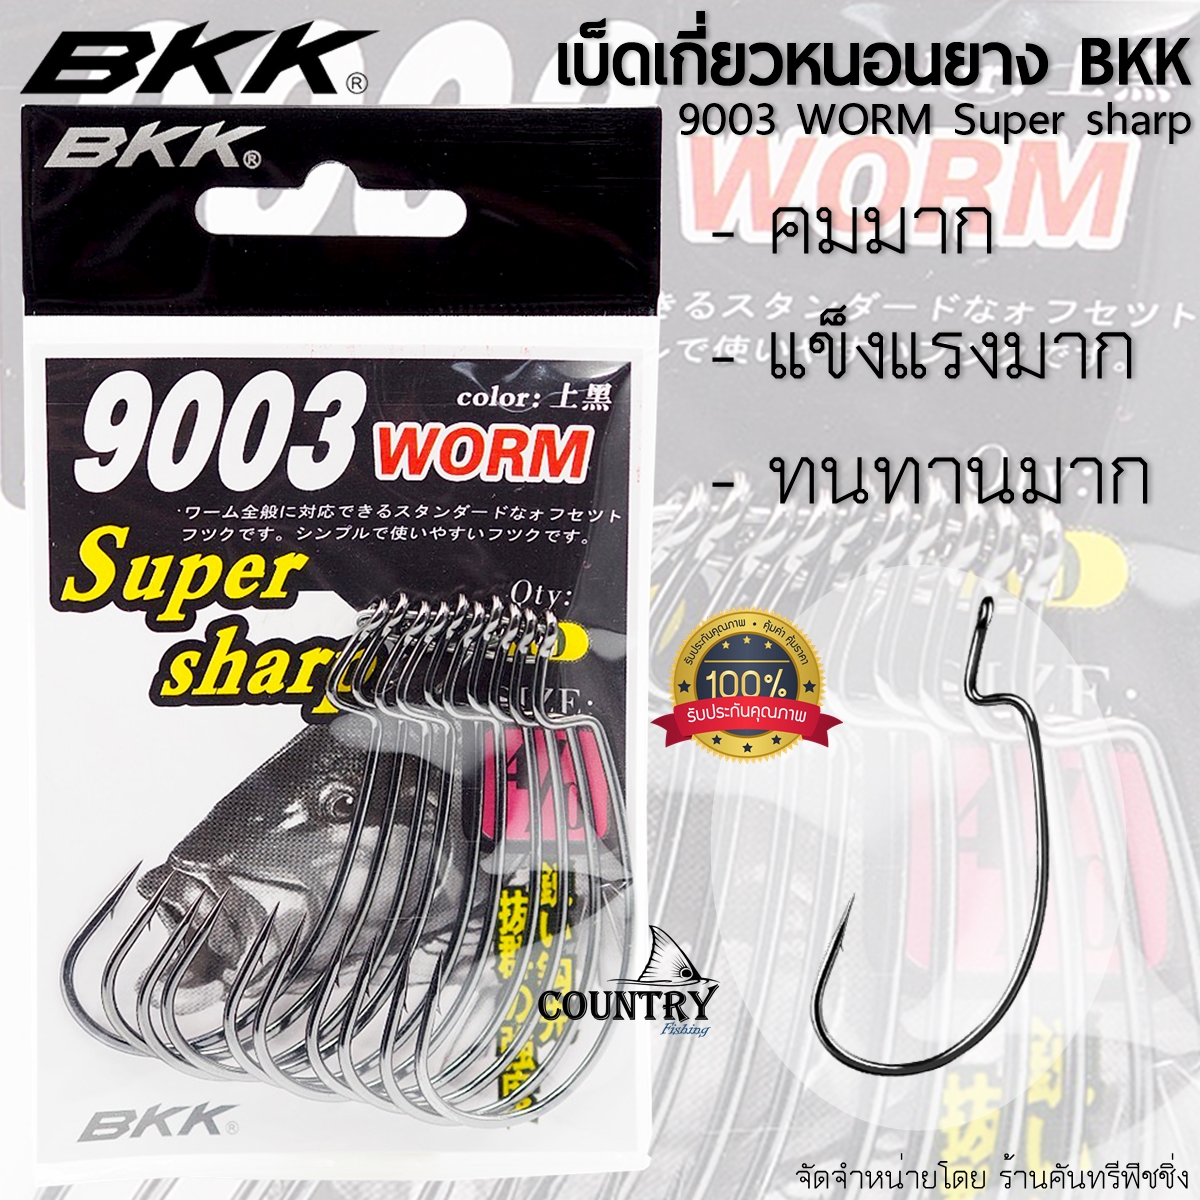 BKK BLACK KINGKONG 9003 WORM เบ็ดเกี่ยวหนอนยาง ปลายาง แบล็คคิงคอง